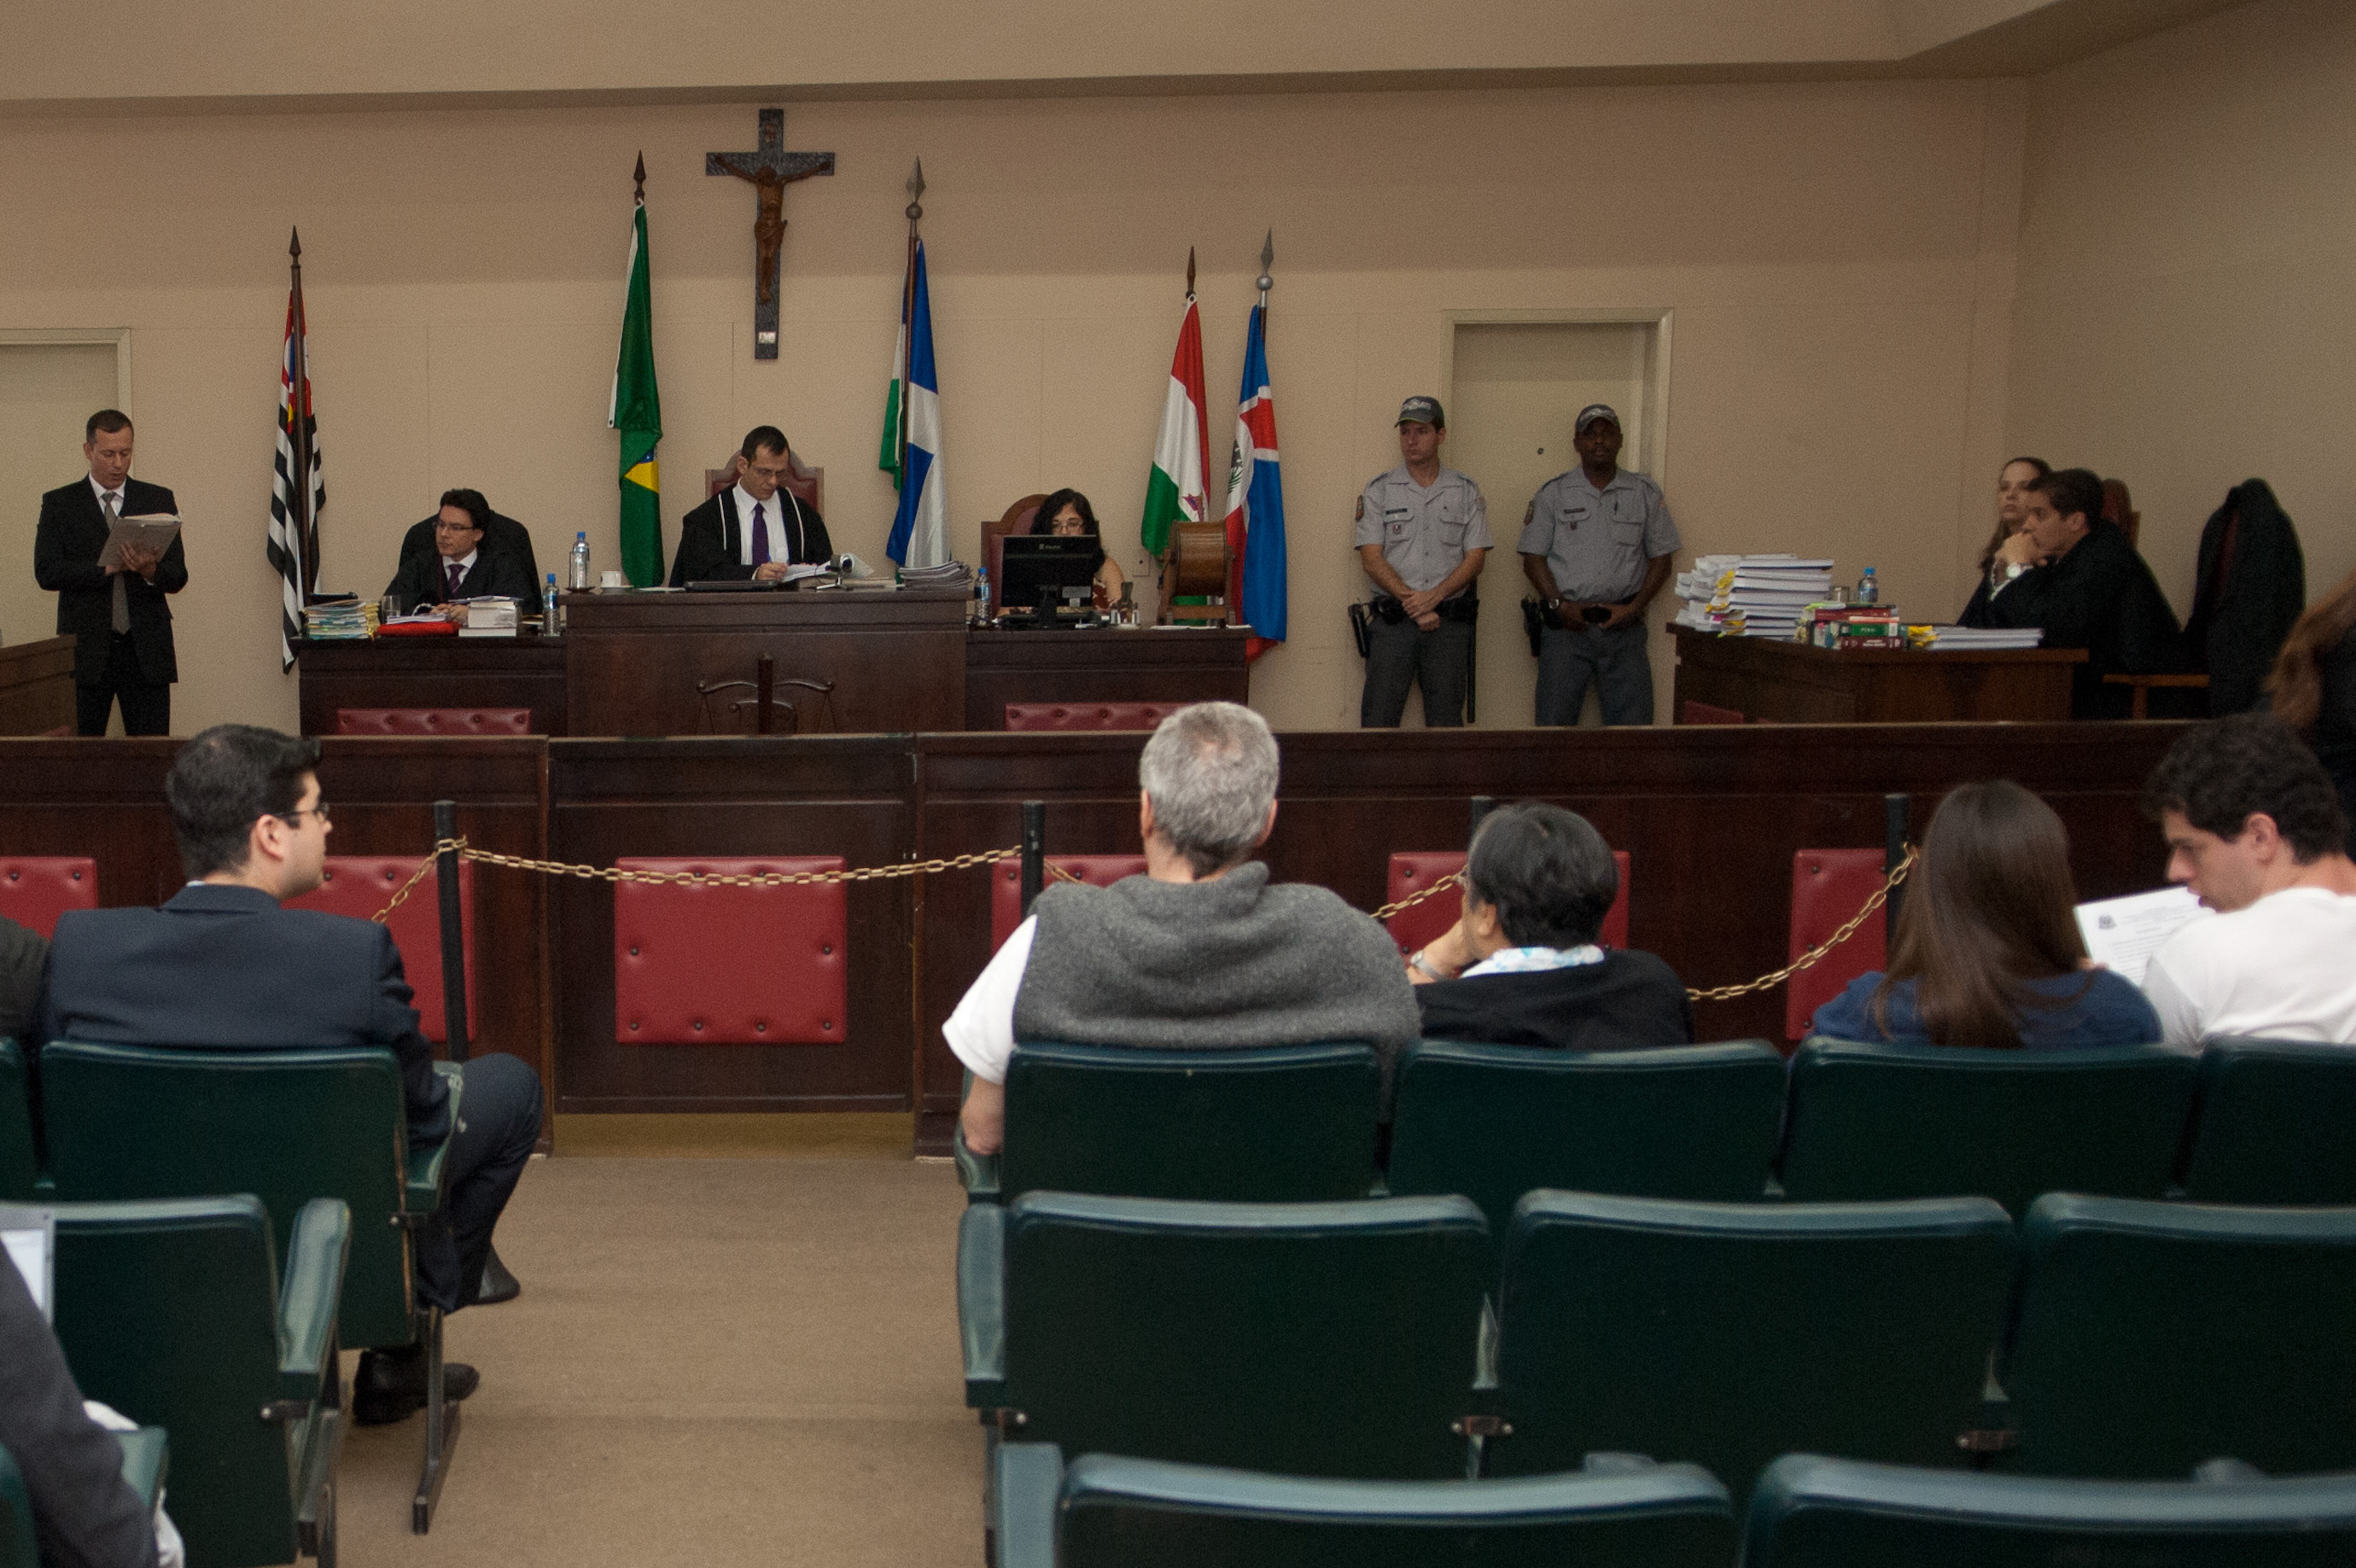 EBC | Pessoa com deficiência visual participa do Tribunal de Júri em Niterói